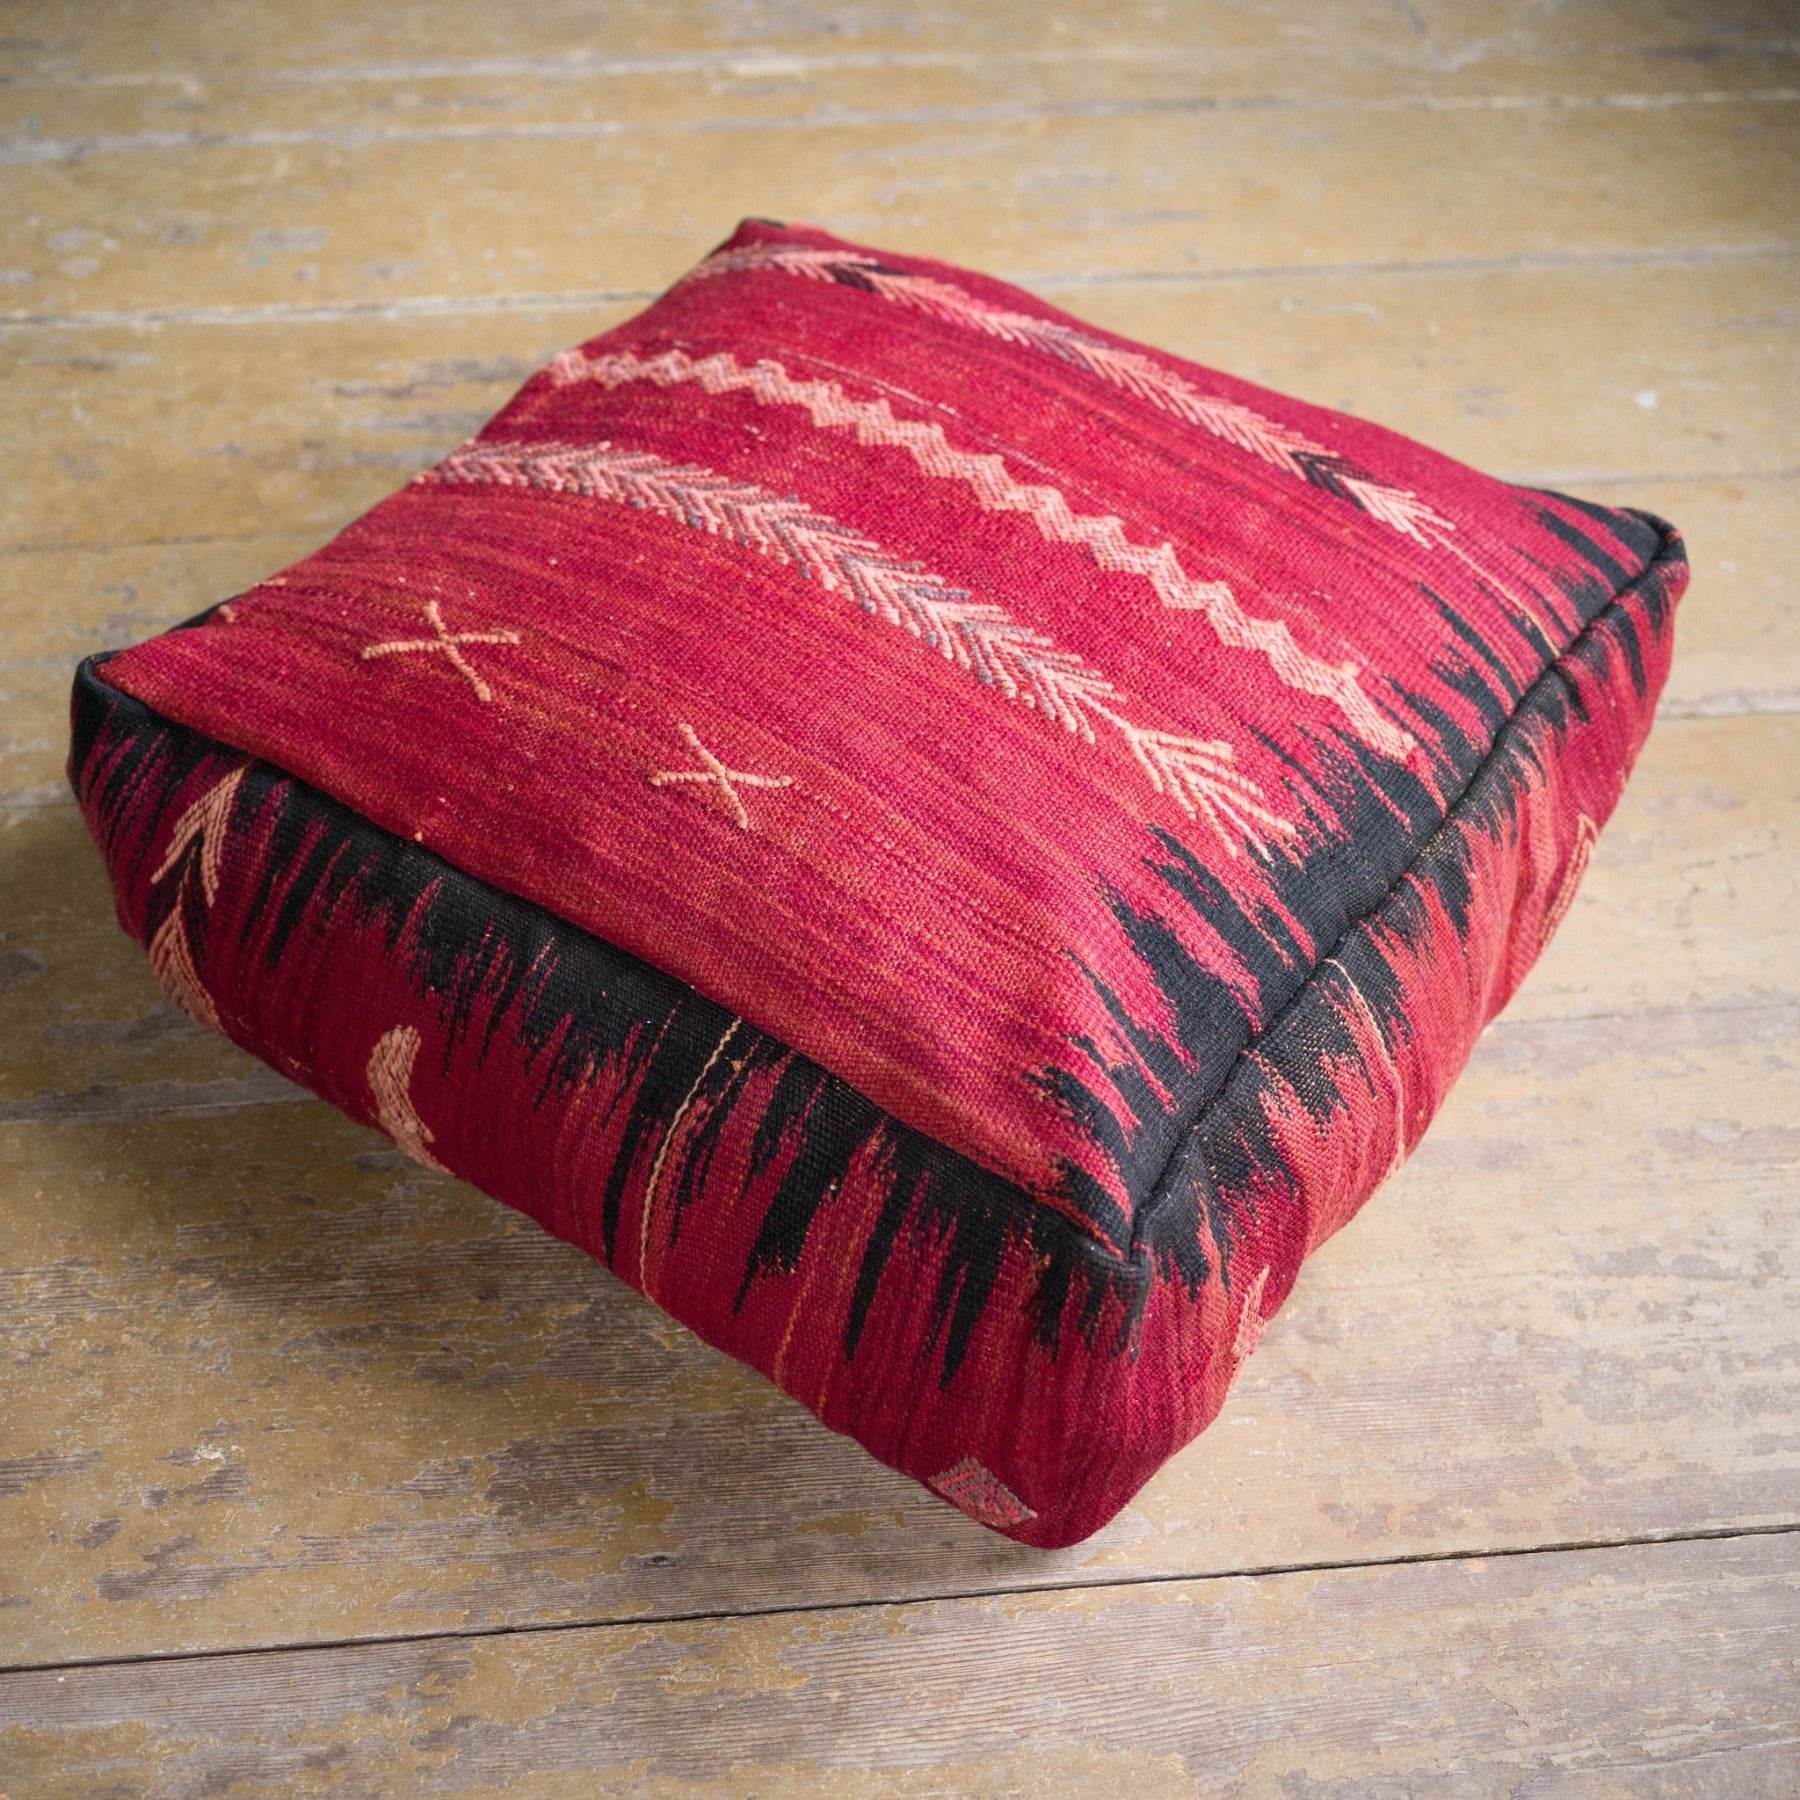 Röd och svart sittpuff av ull från vintage mattor och filtar